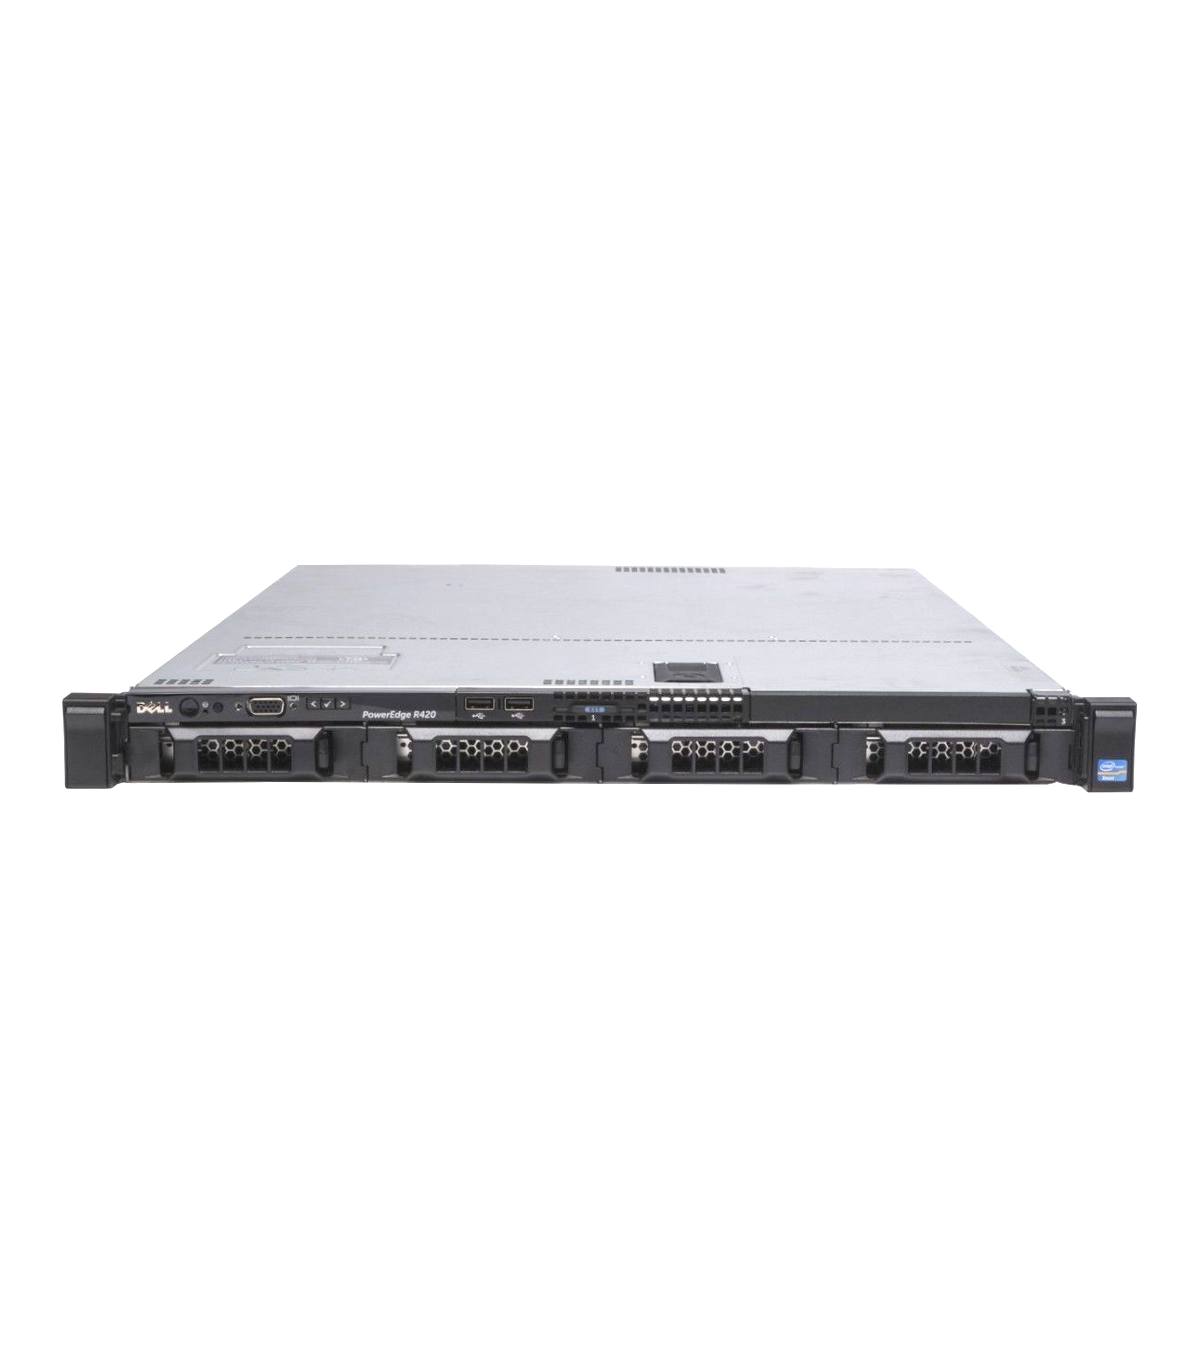 DELL R420 2X4C E5-2403 V2 1.80 GHz 16GB 2X200GB SSD SAS 4X3,5" NON HOT SWAP H710 MINI 512MB 2X550W IDRAC7ENT